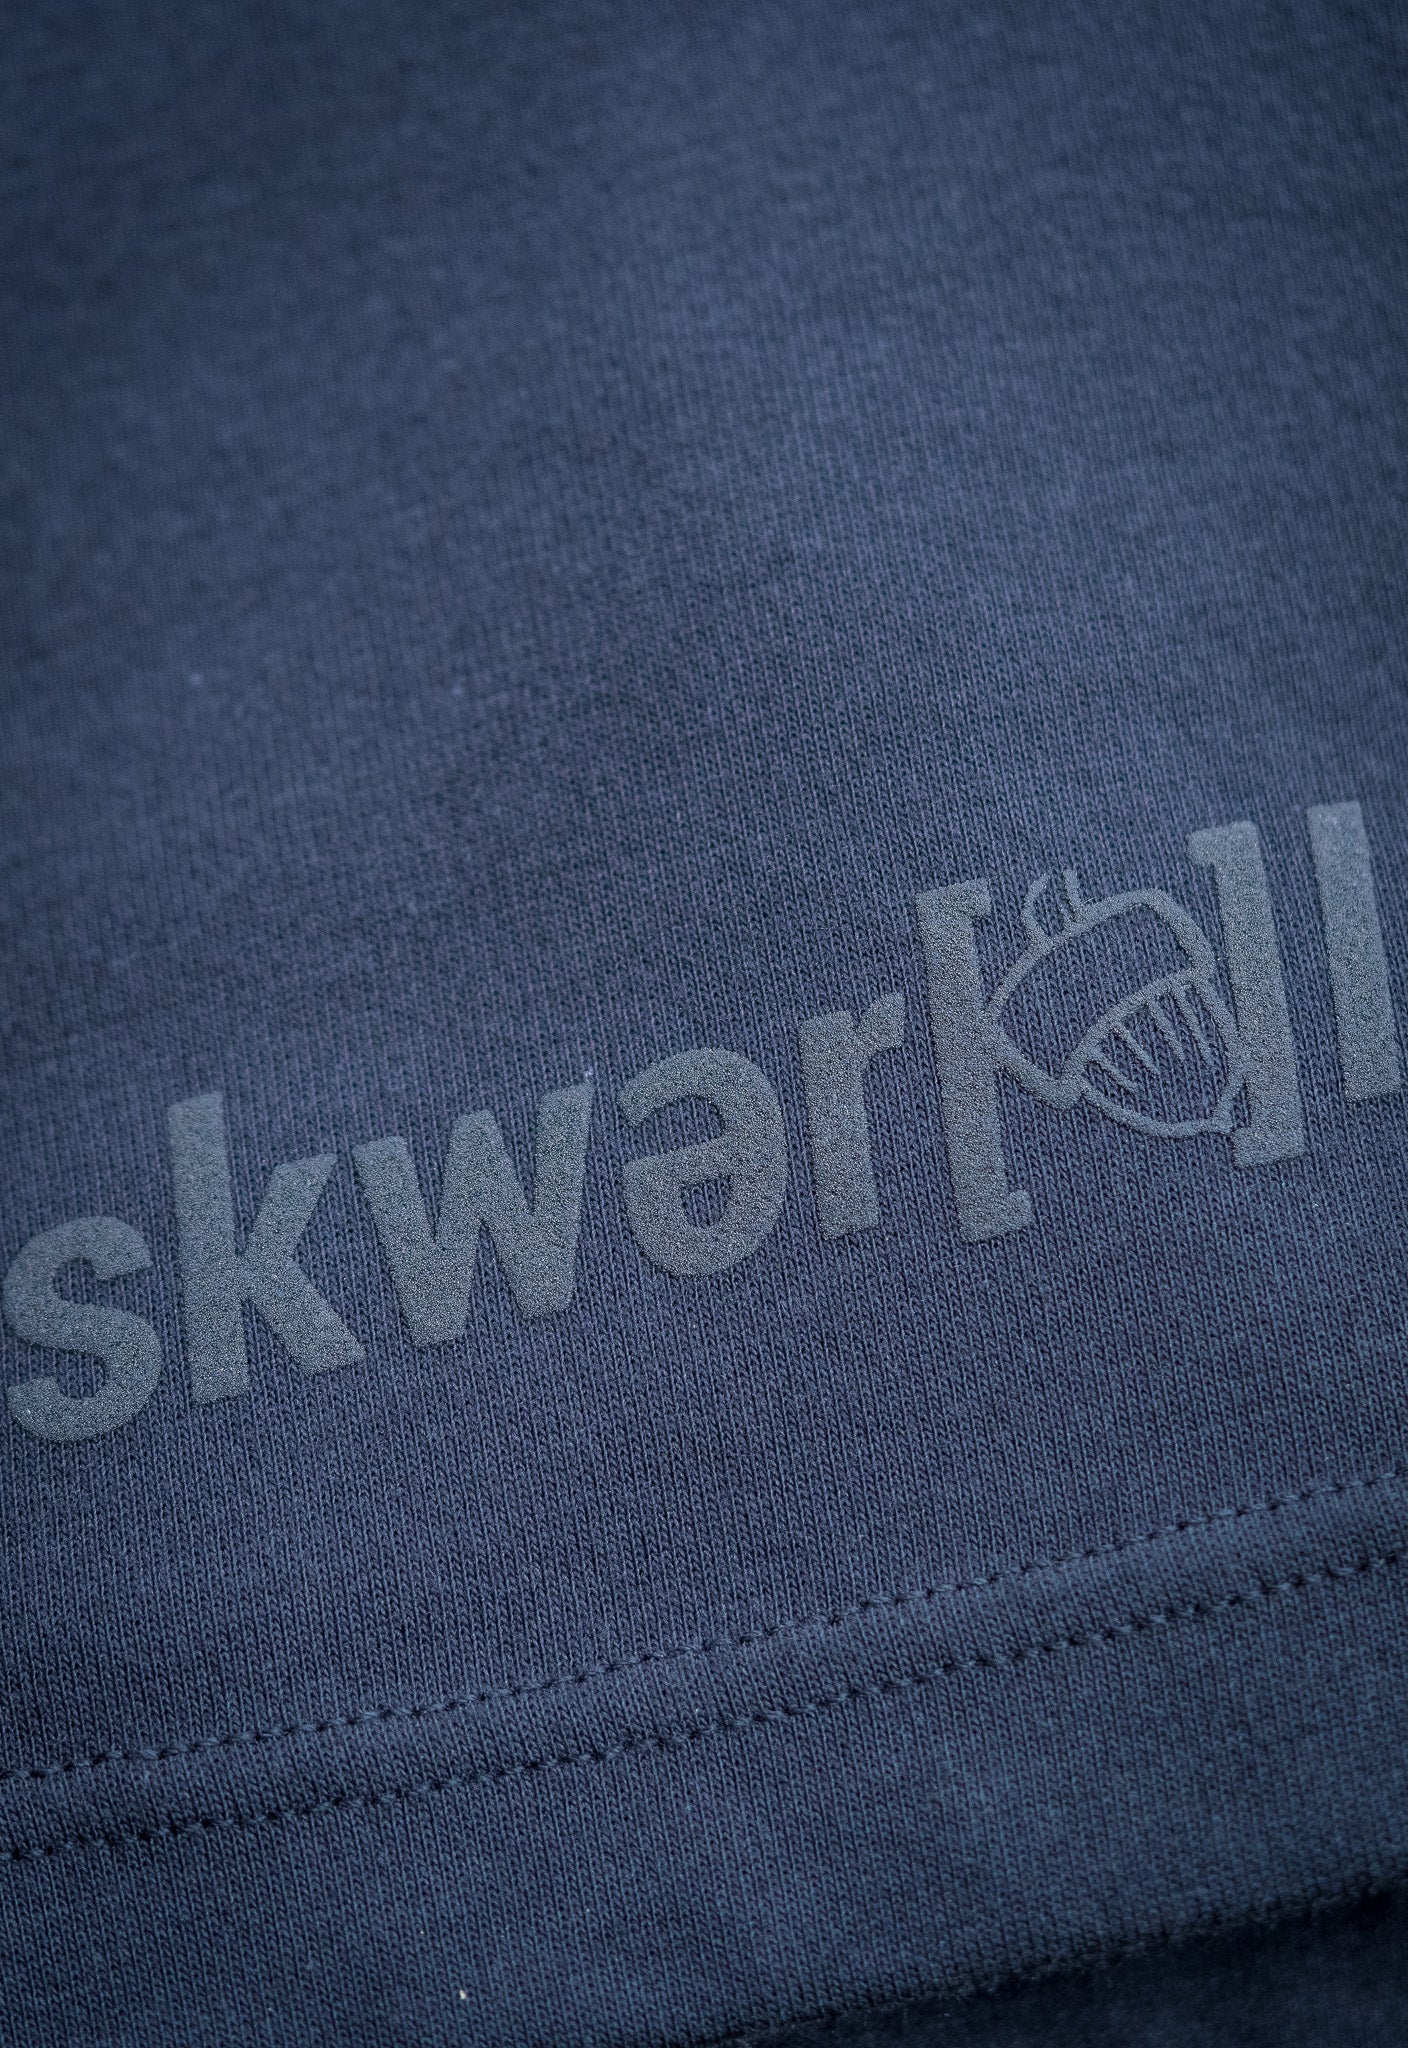 Skwerel Logo Black